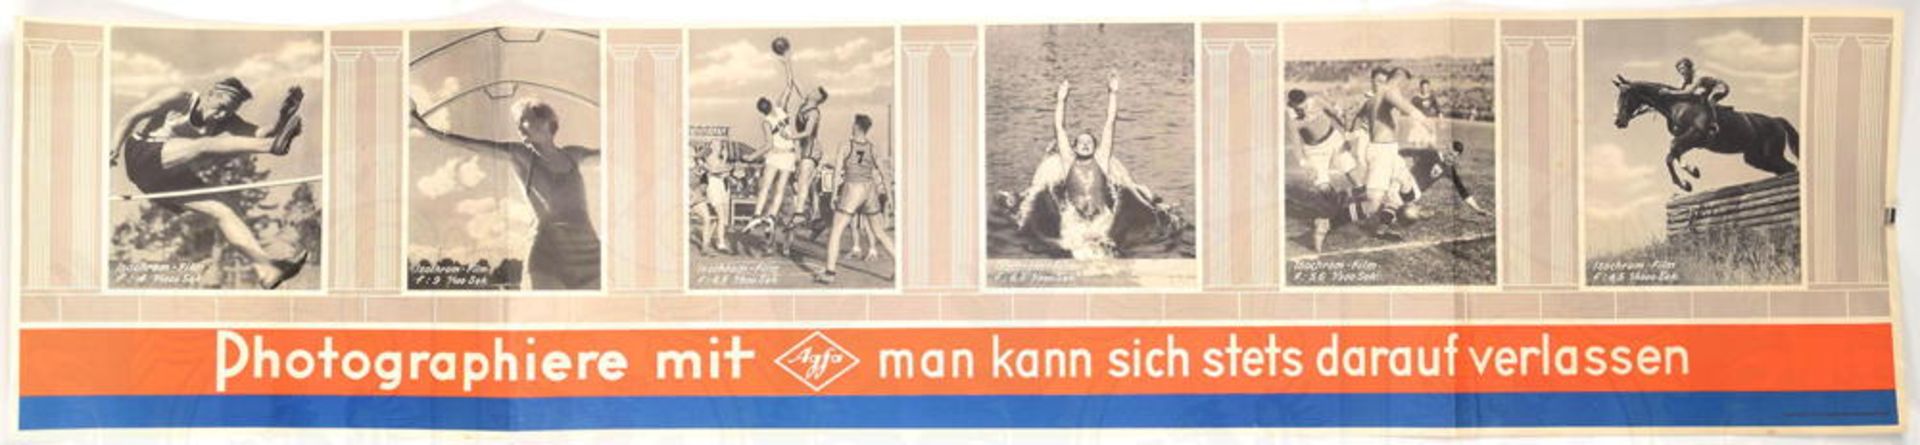 PLAKAT AGFA-SPORTSZENEN, m. 6 Sportszenen, 119x26,8cm, 2 Enden gefaltet, um 1936